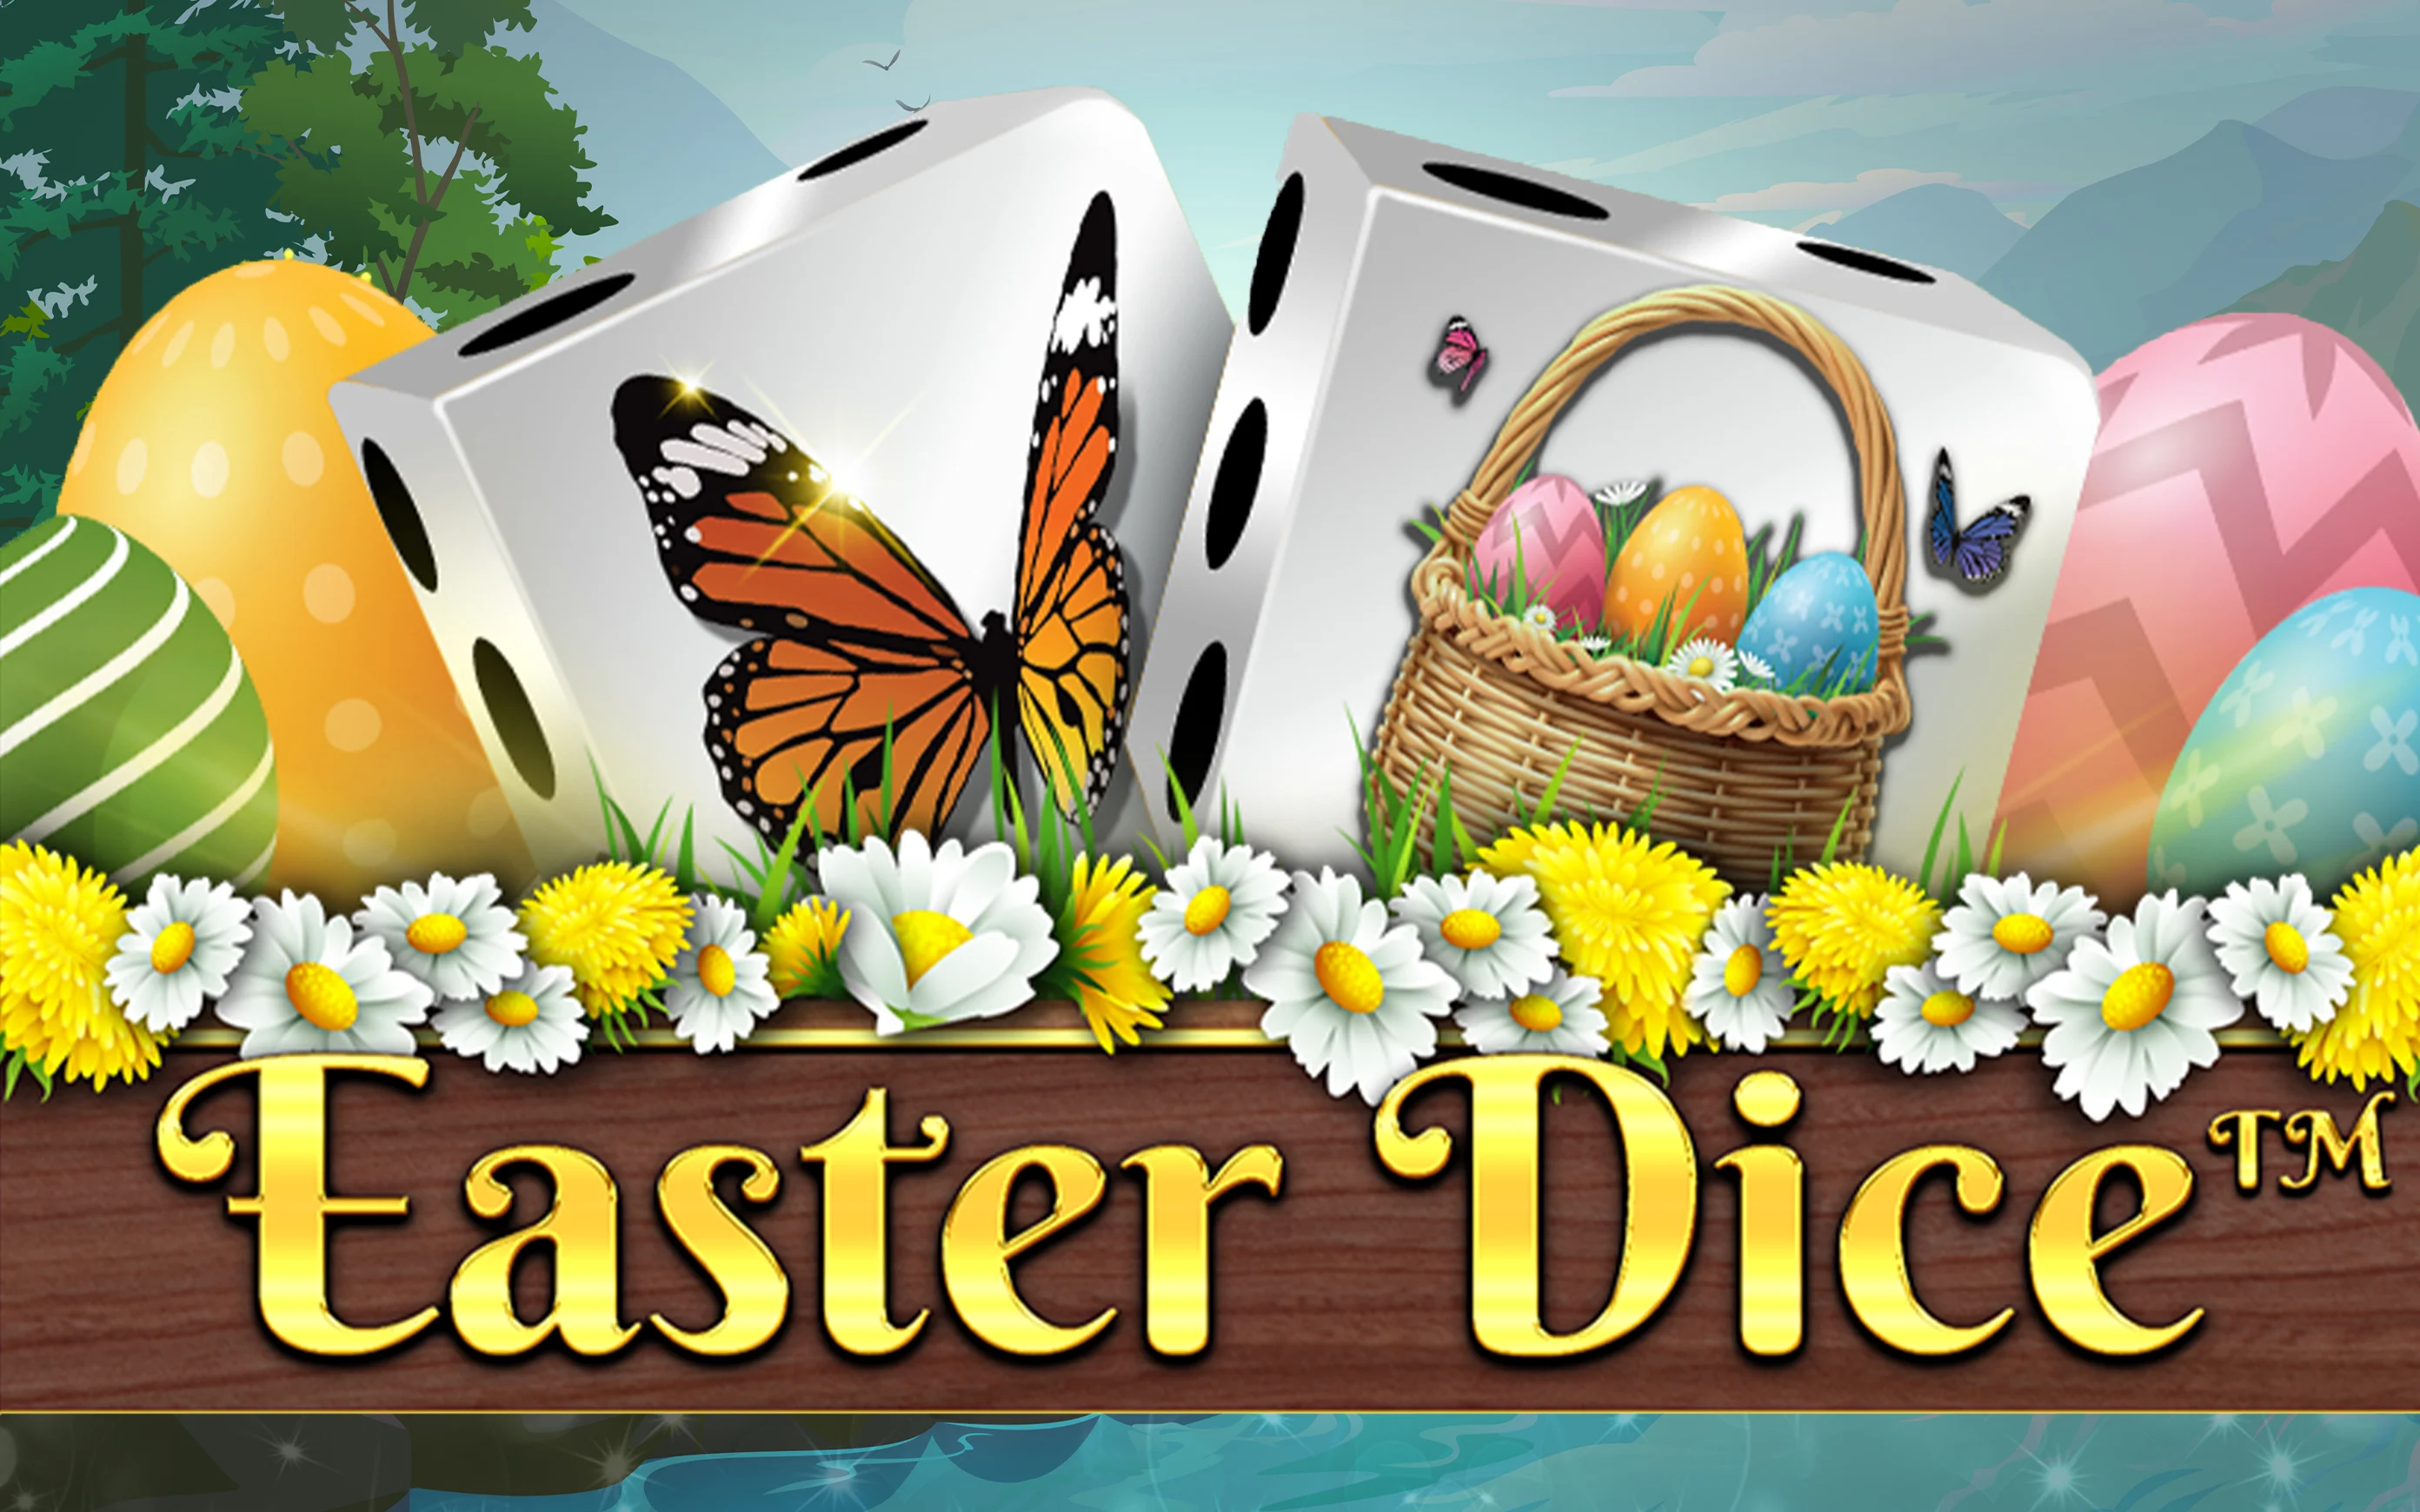 Gioca a Easter Dice sul casino online Starcasino.be